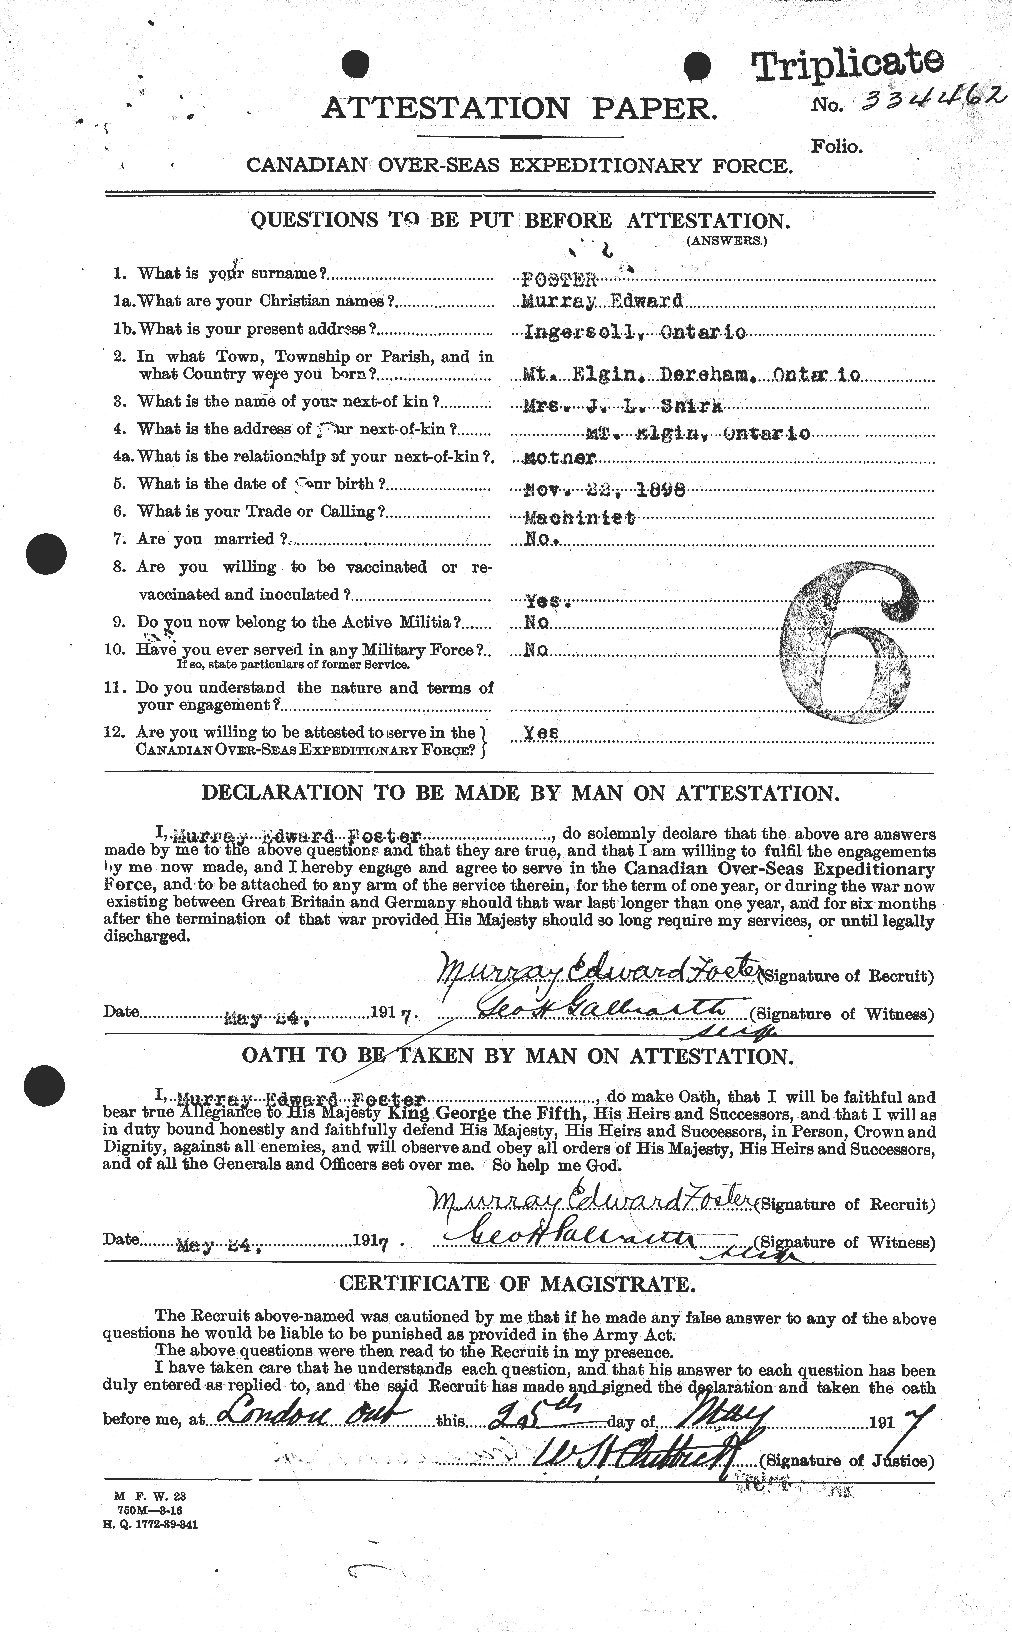 Dossiers du Personnel de la Première Guerre mondiale - CEC 333431a